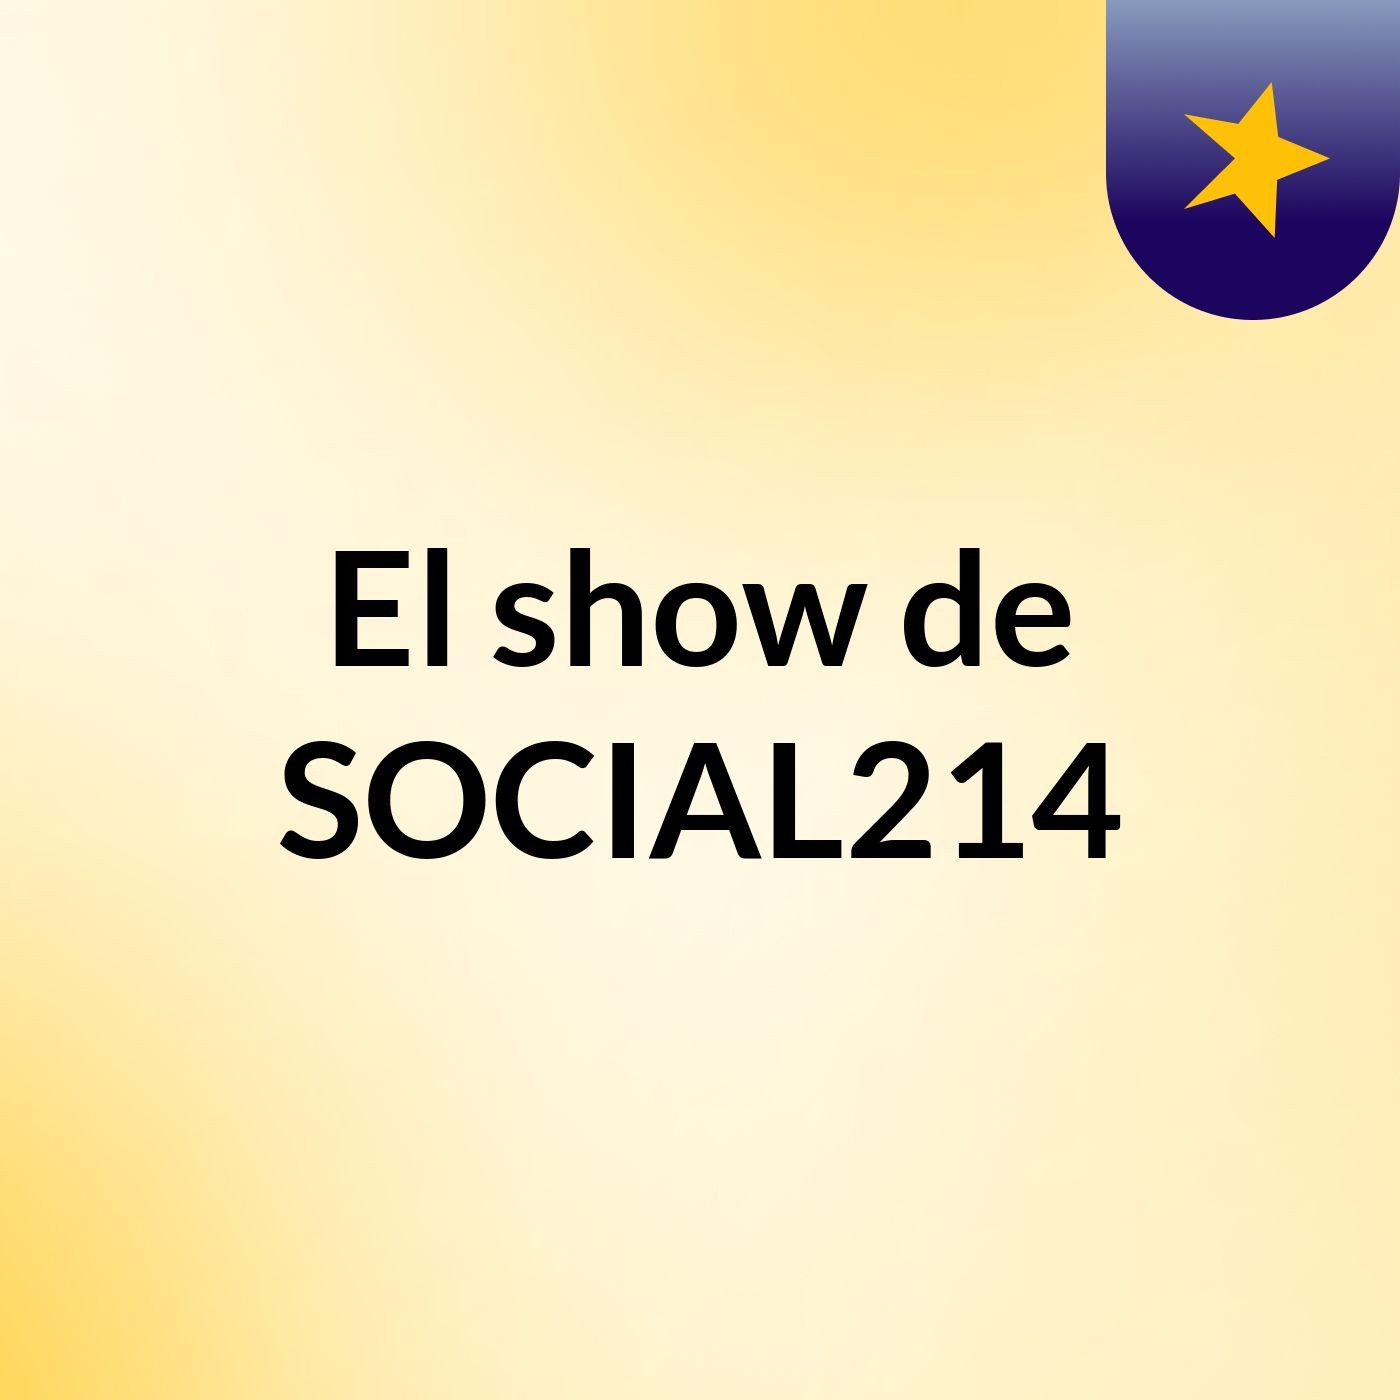 El show de SOCIAL214